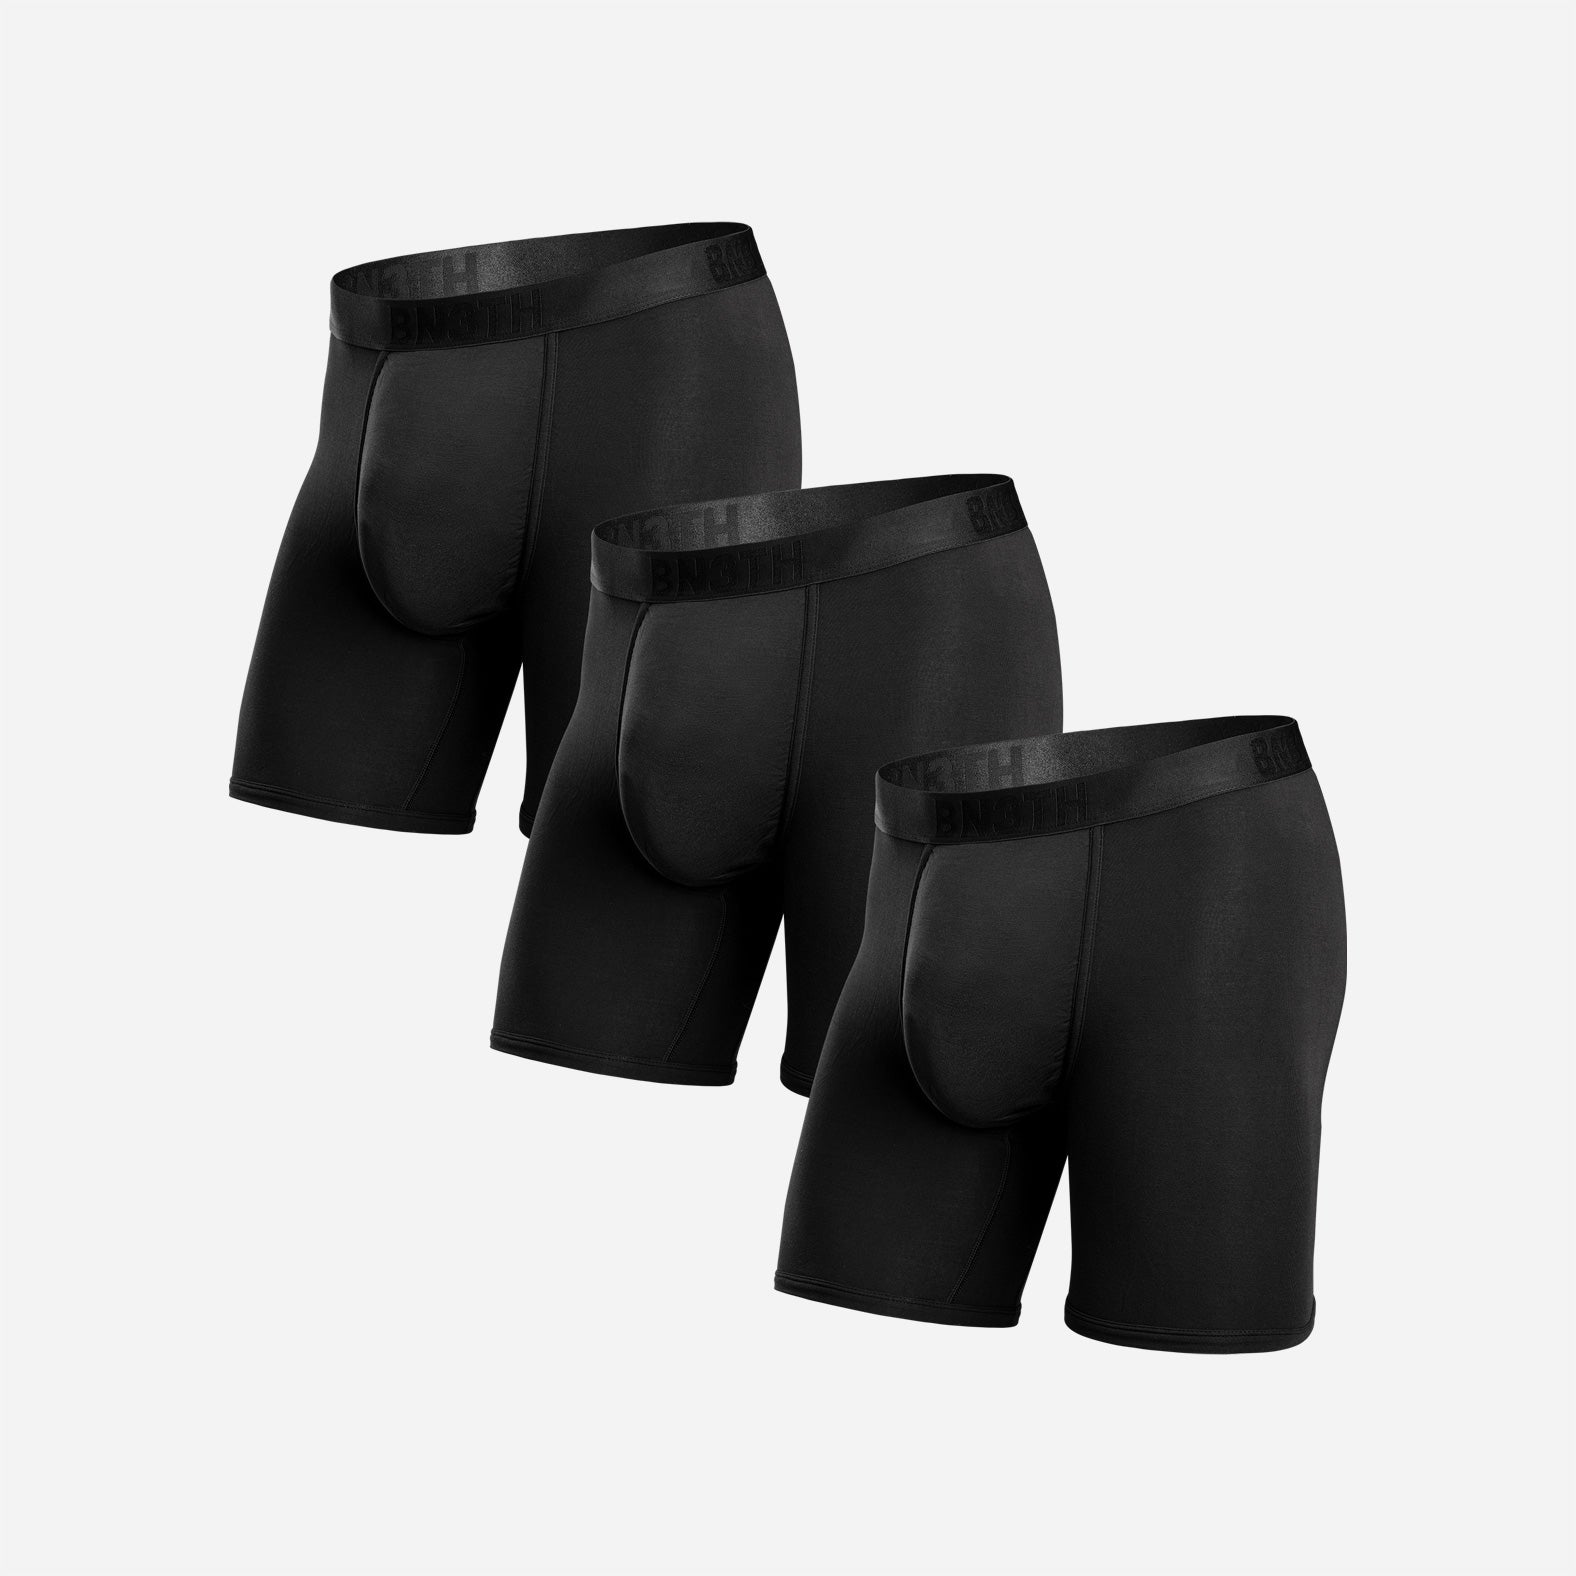 New Look 3 pack briefs in black